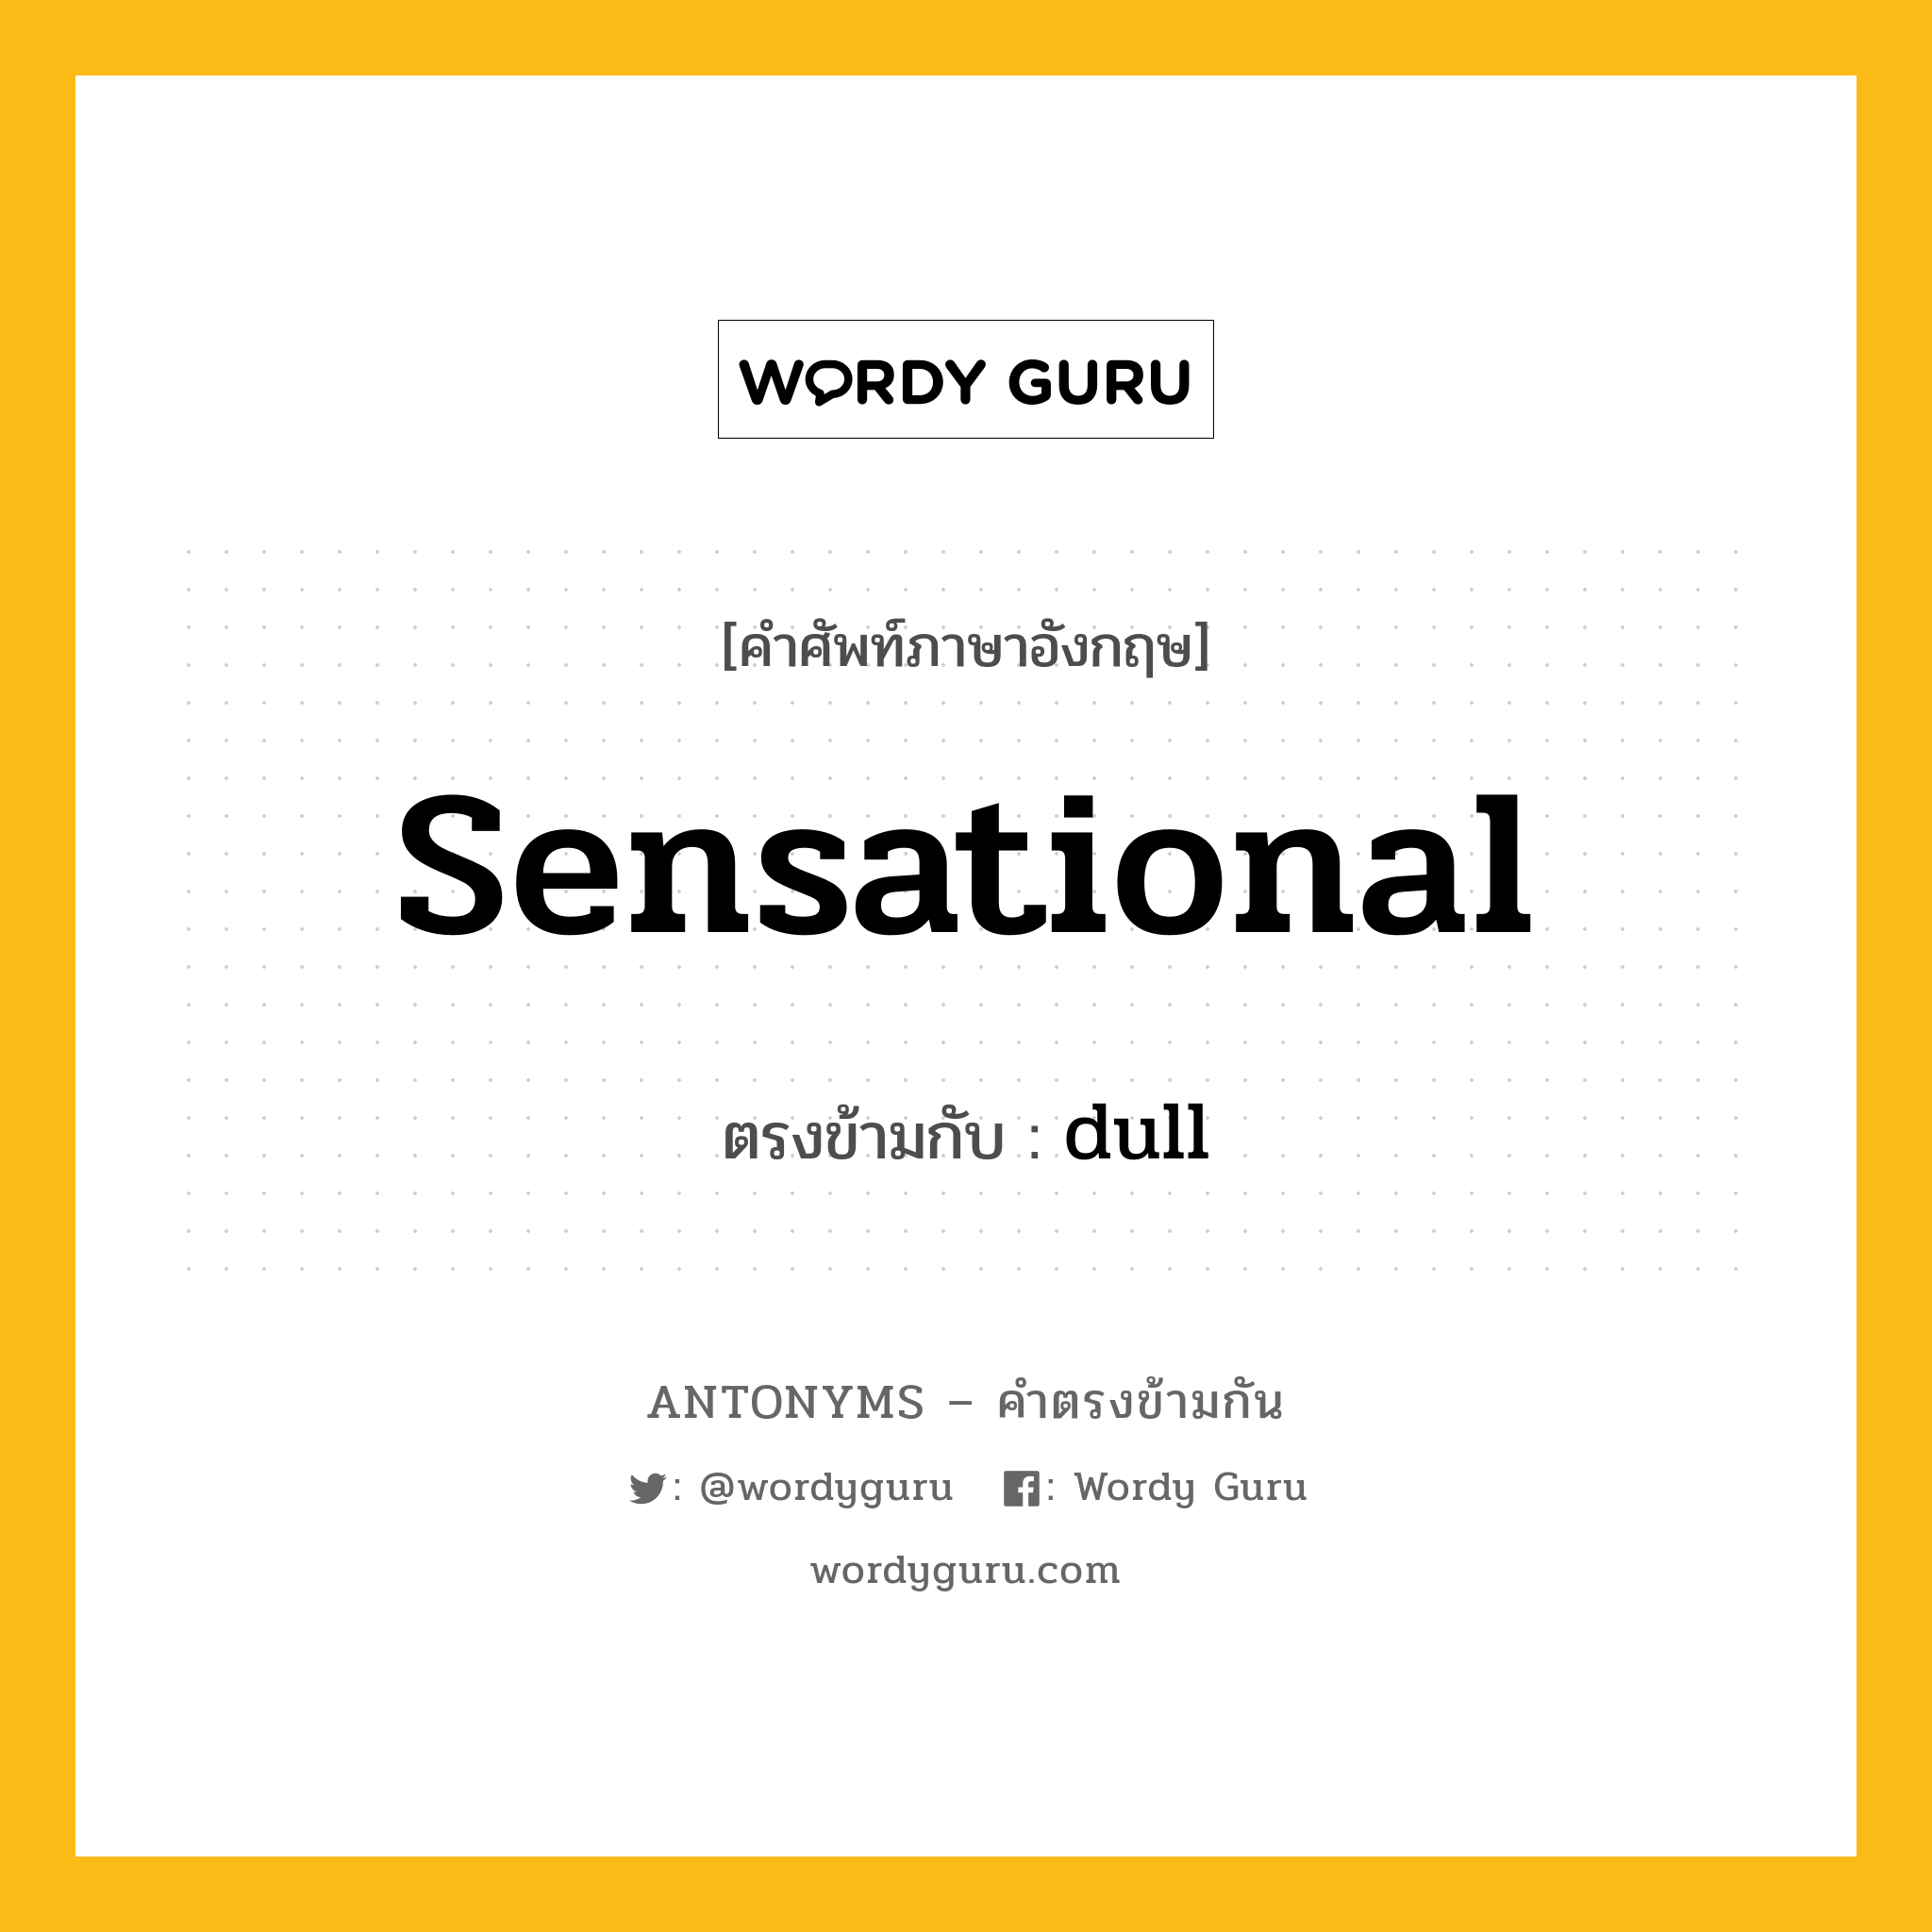 sensational เป็นคำตรงข้ามกับคำไหนบ้าง?, คำศัพท์ภาษาอังกฤษ sensational ตรงข้ามกับ dull หมวด dull